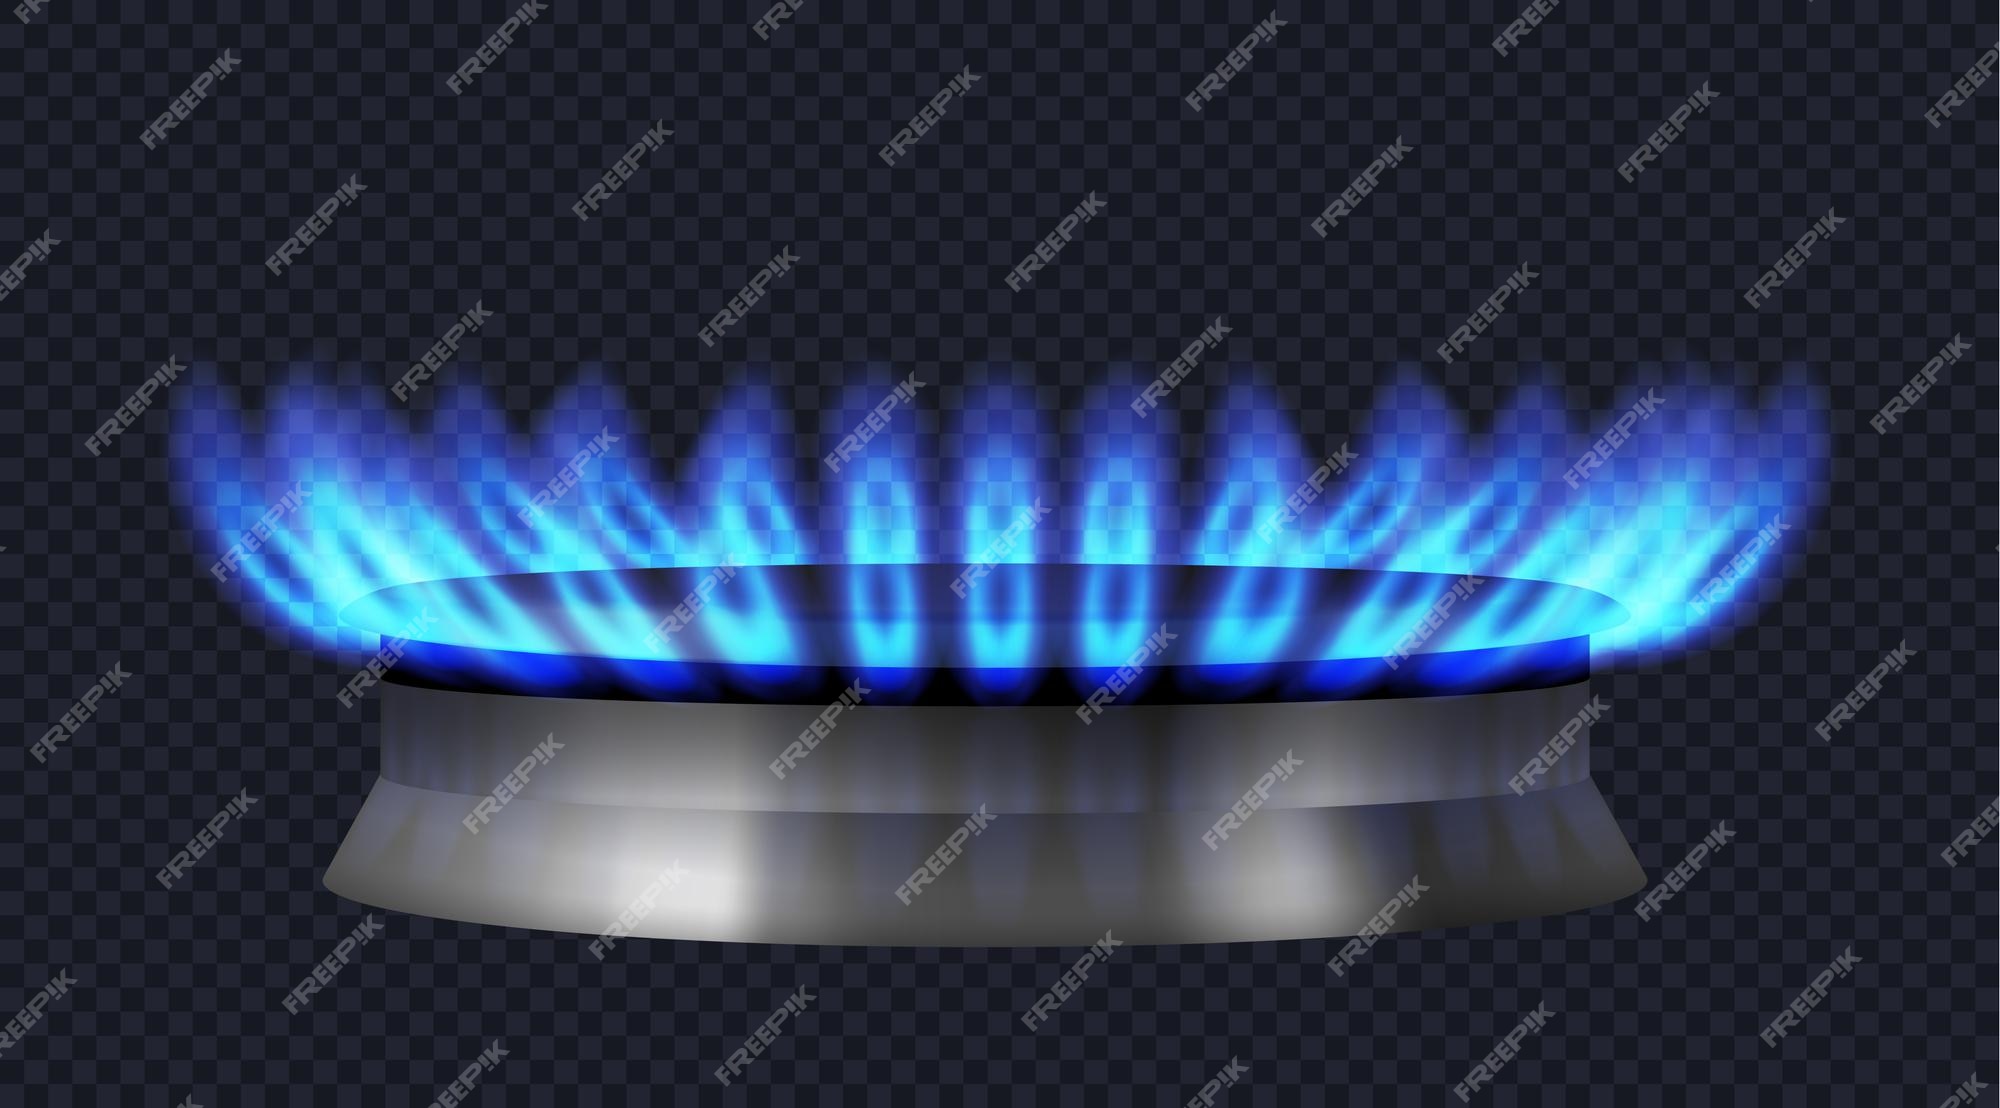 어두운 투명 배경에 푸른 불꽃이 있는 현실적인 가스 버너. 음식 요리를 위한 현대 가스 스토브 또는 오븐의 버너. 3d 벡터 일러스트  레이 션 | 프리미엄 벡터